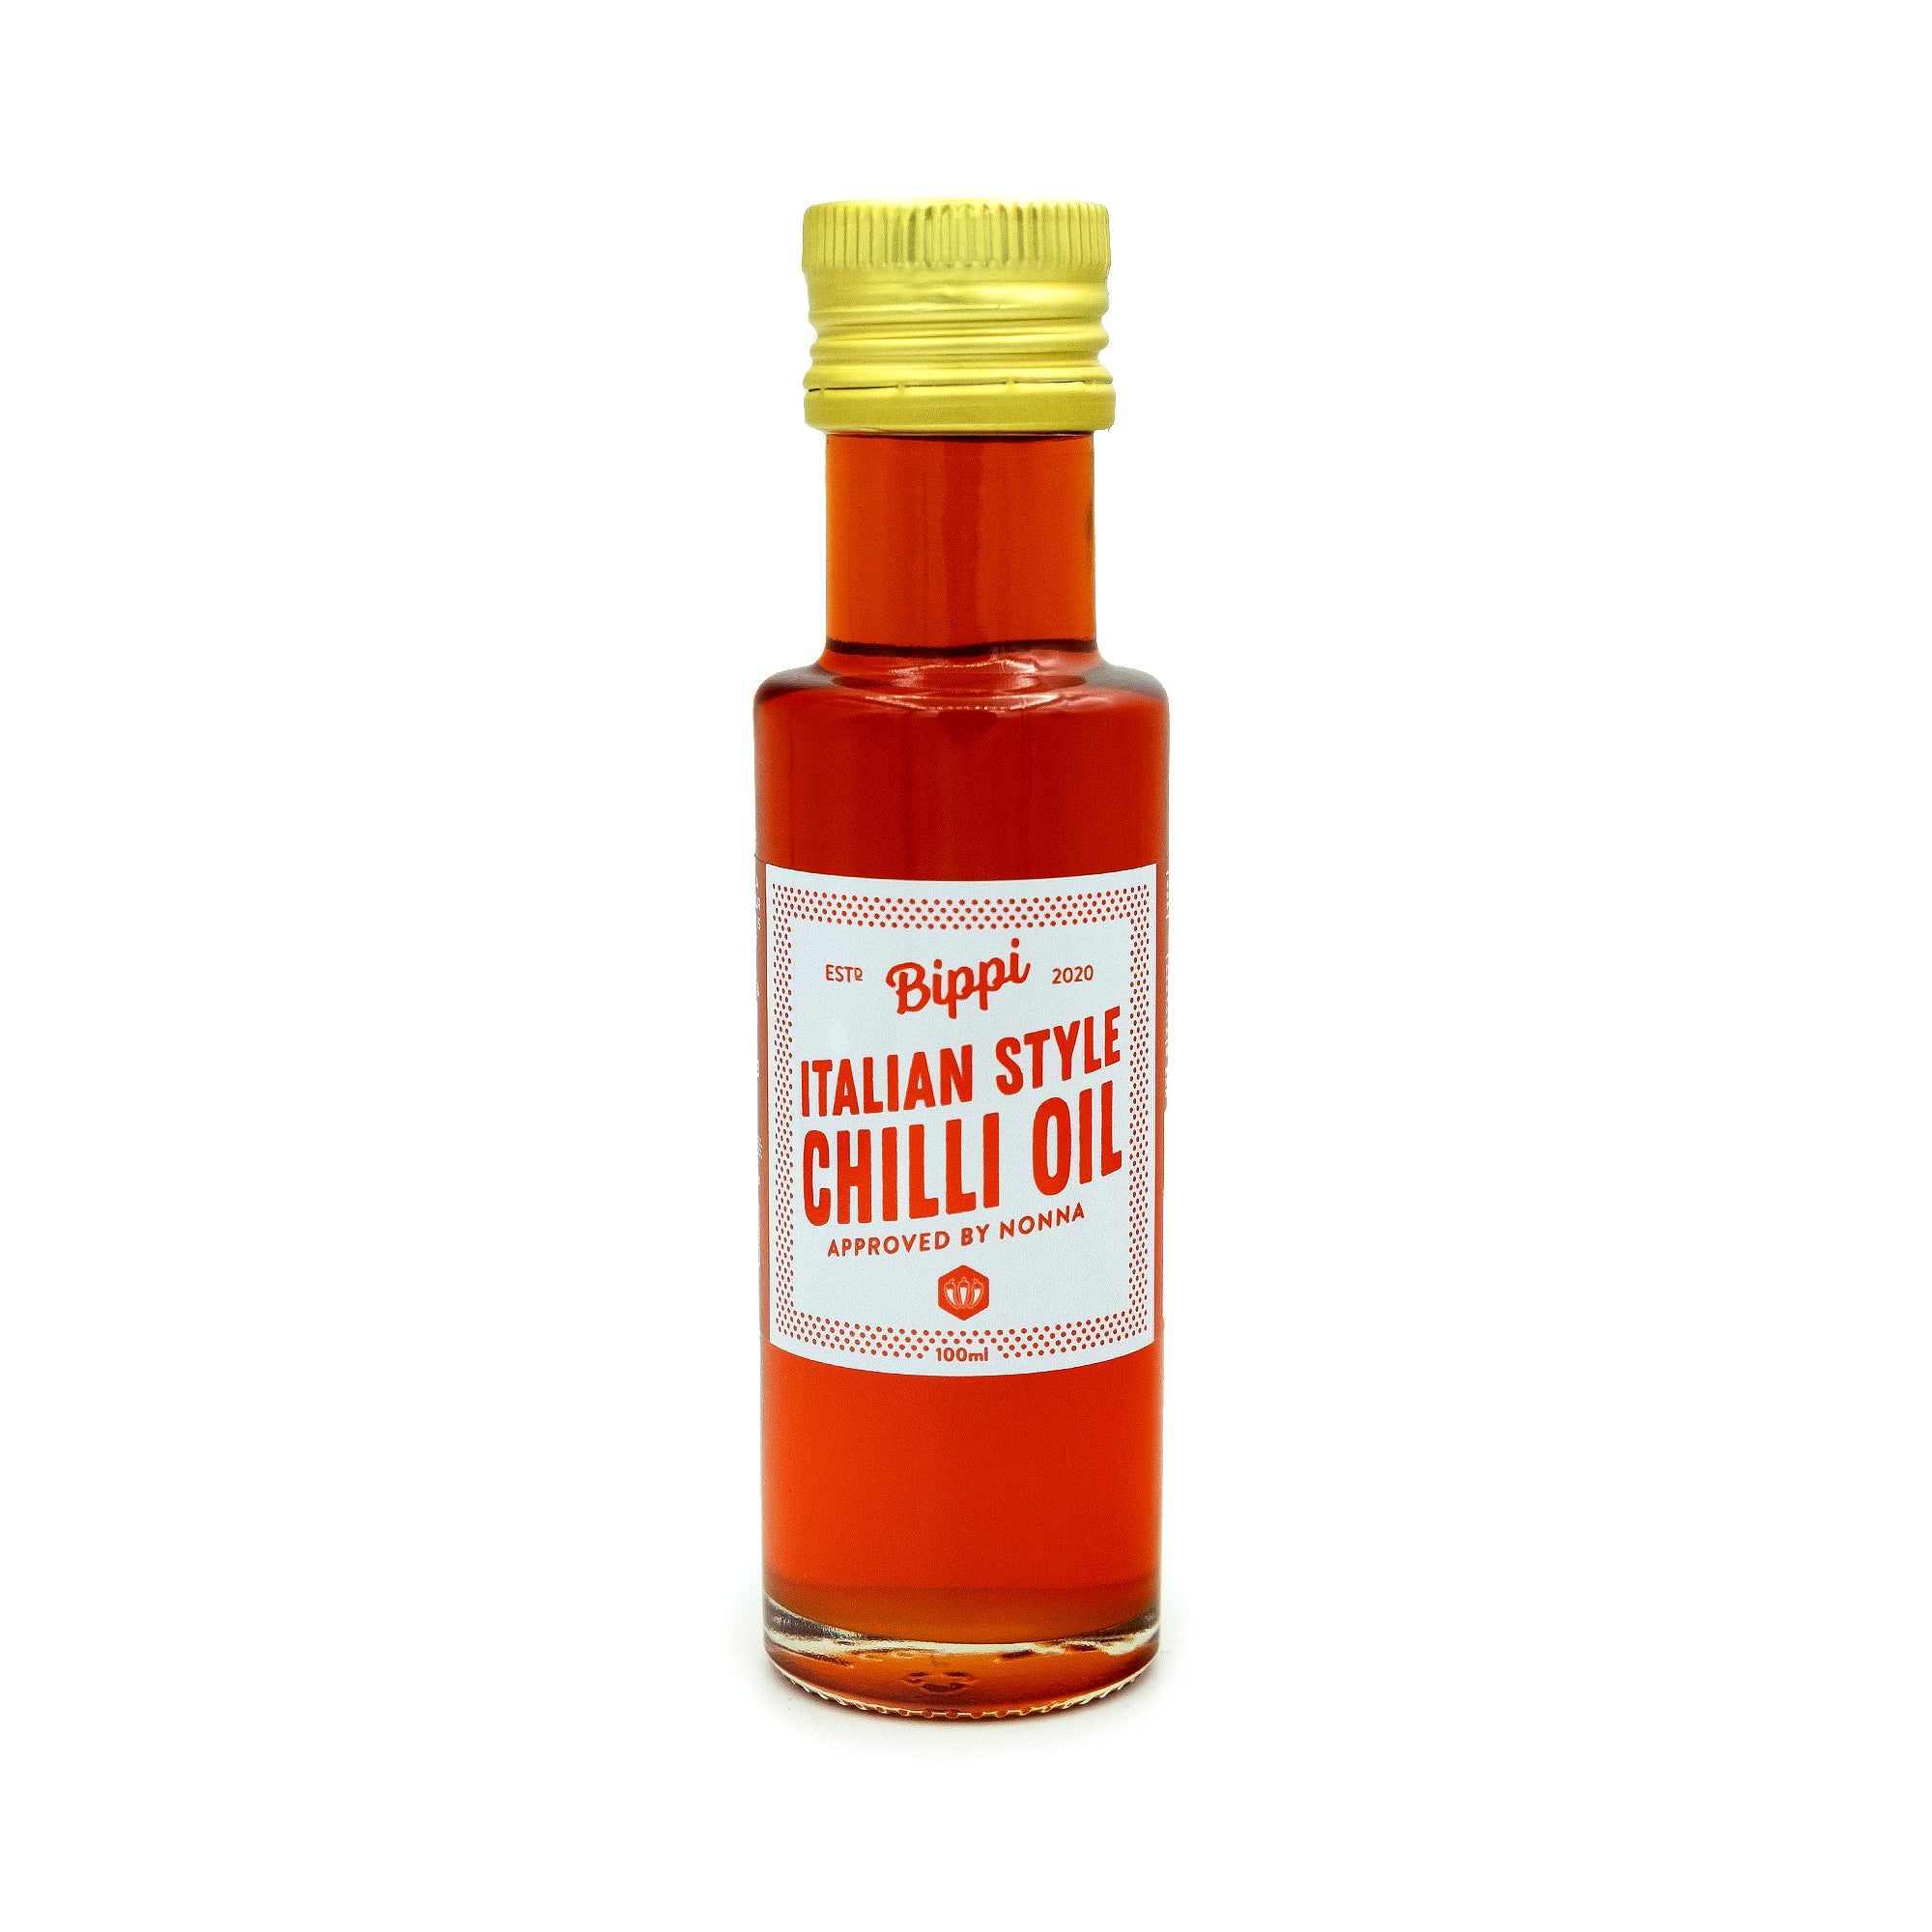 Bippi - Italian Style Chilli Oil - Mat's Hot Shop - Australia's Hot Sauce Store